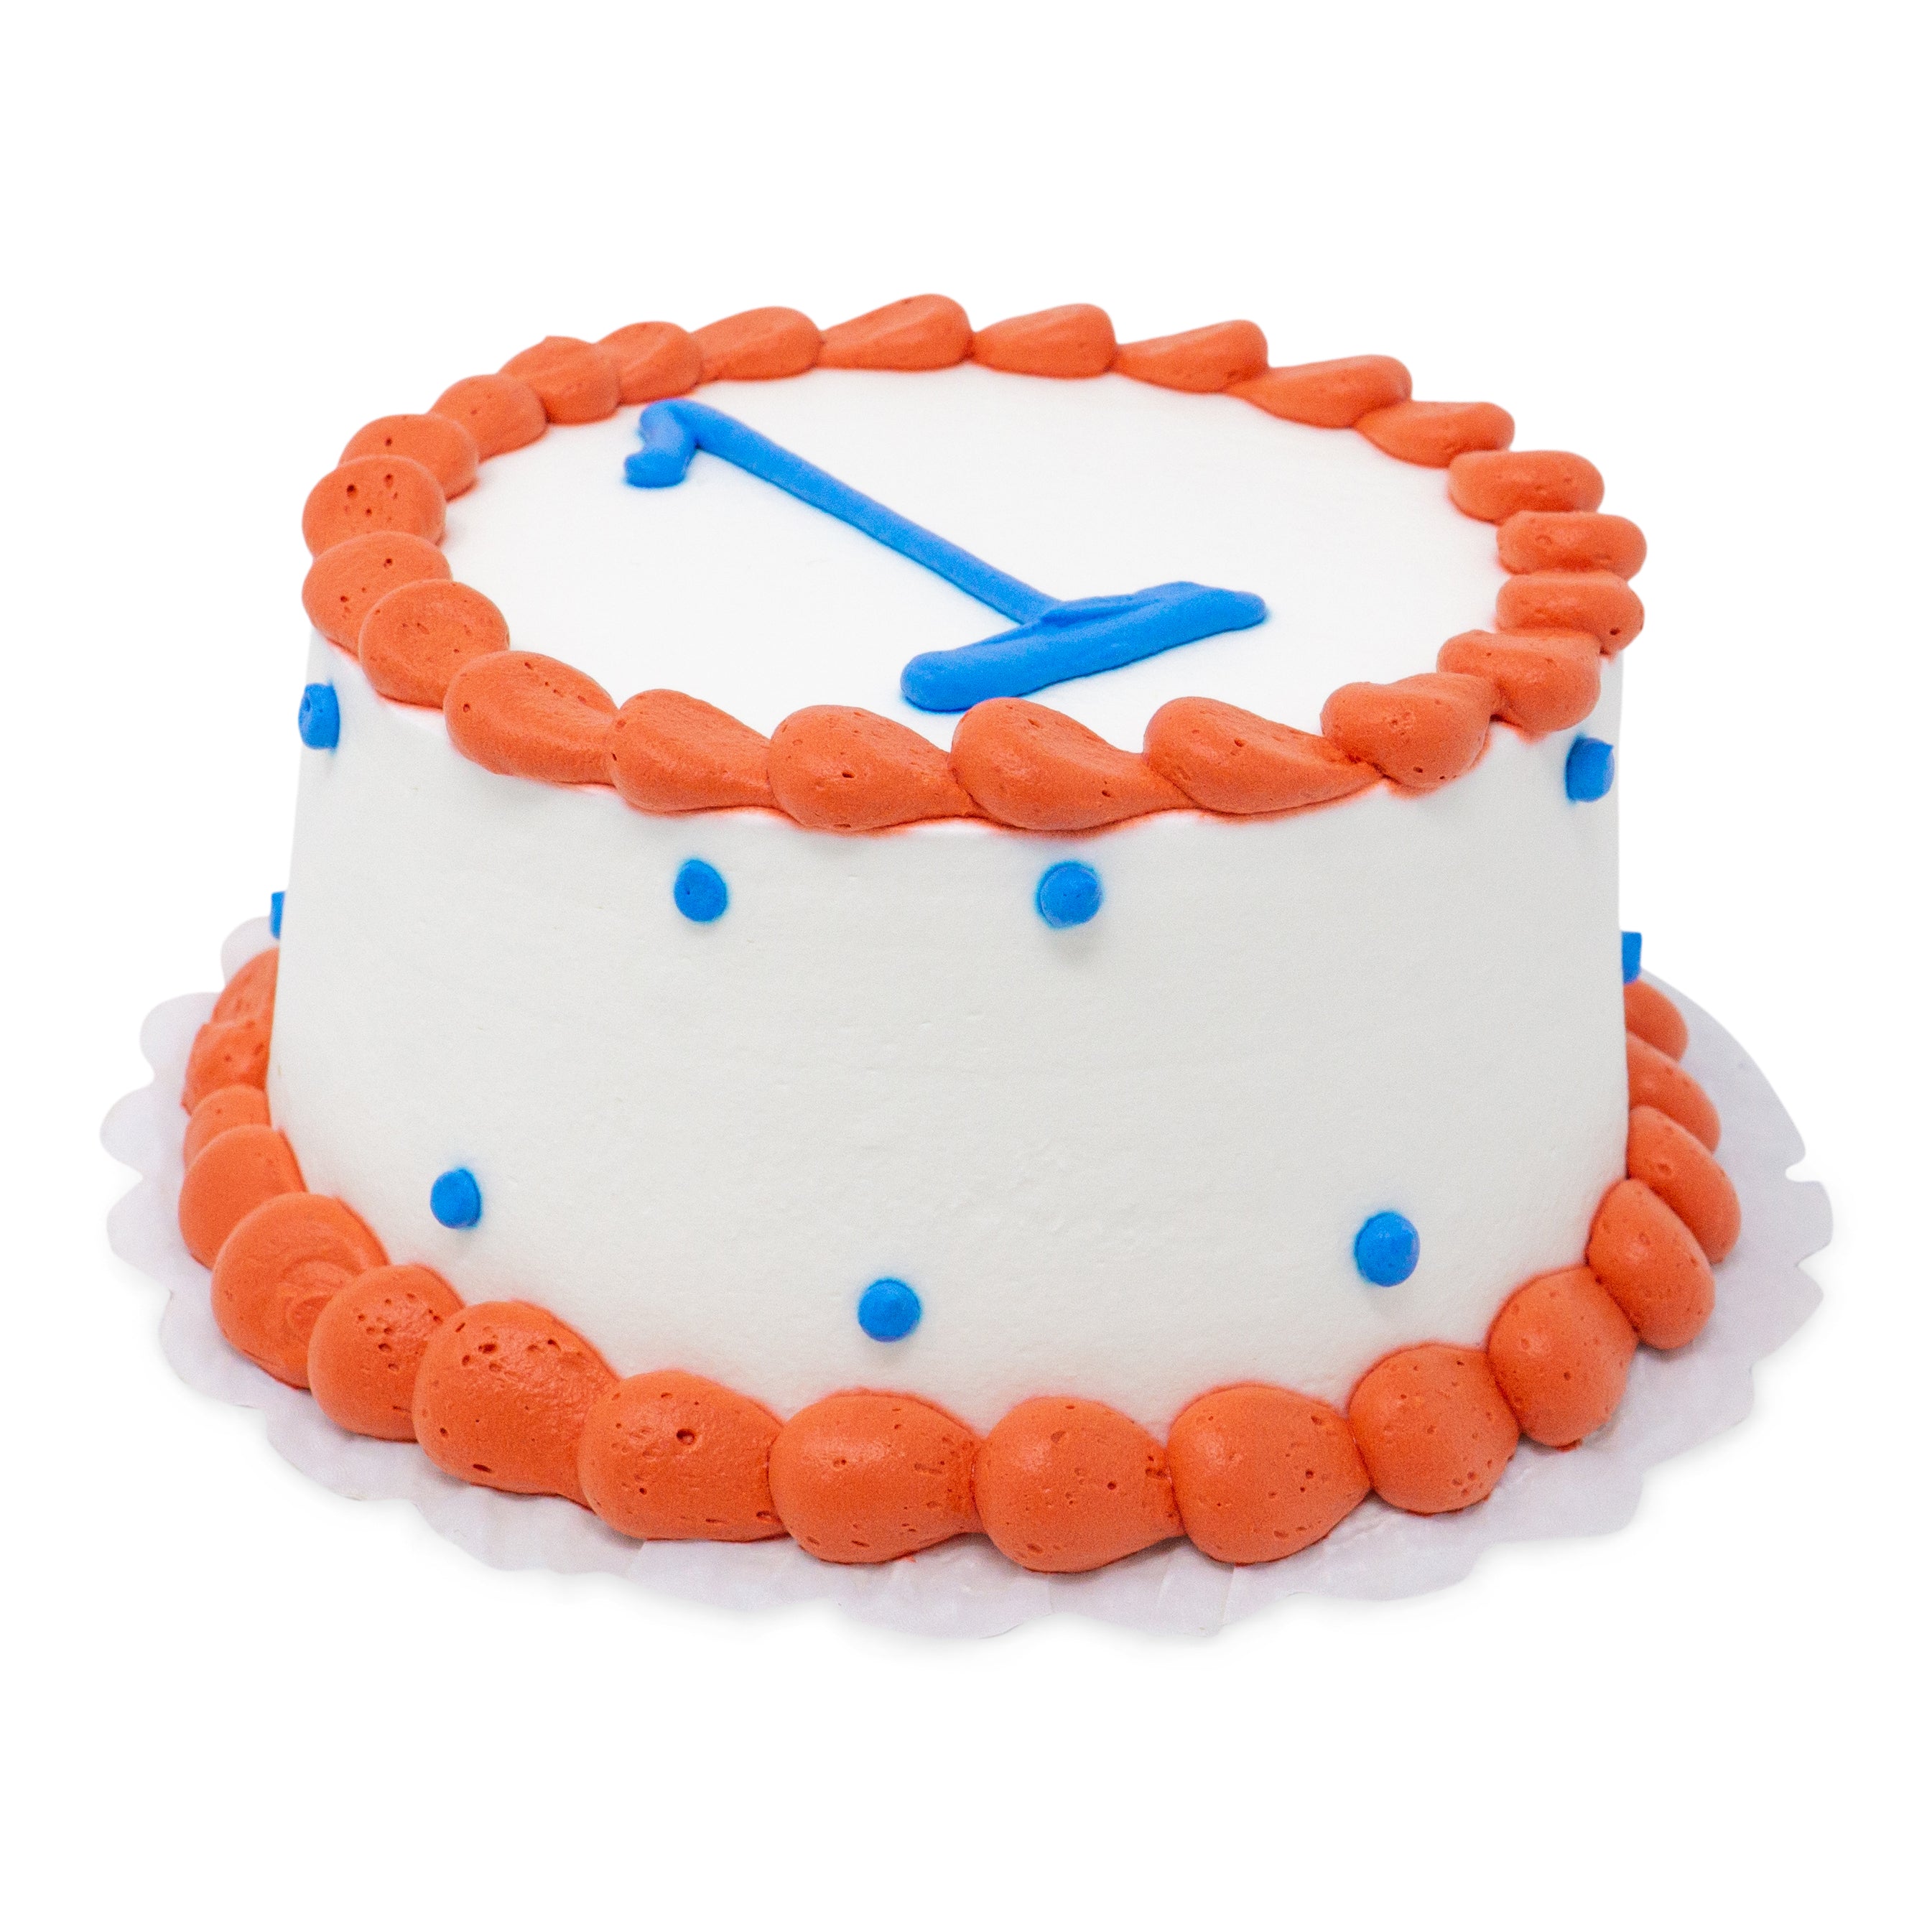 Smash Cake - Patty's Cakes – Patty's Cakes and Desserts